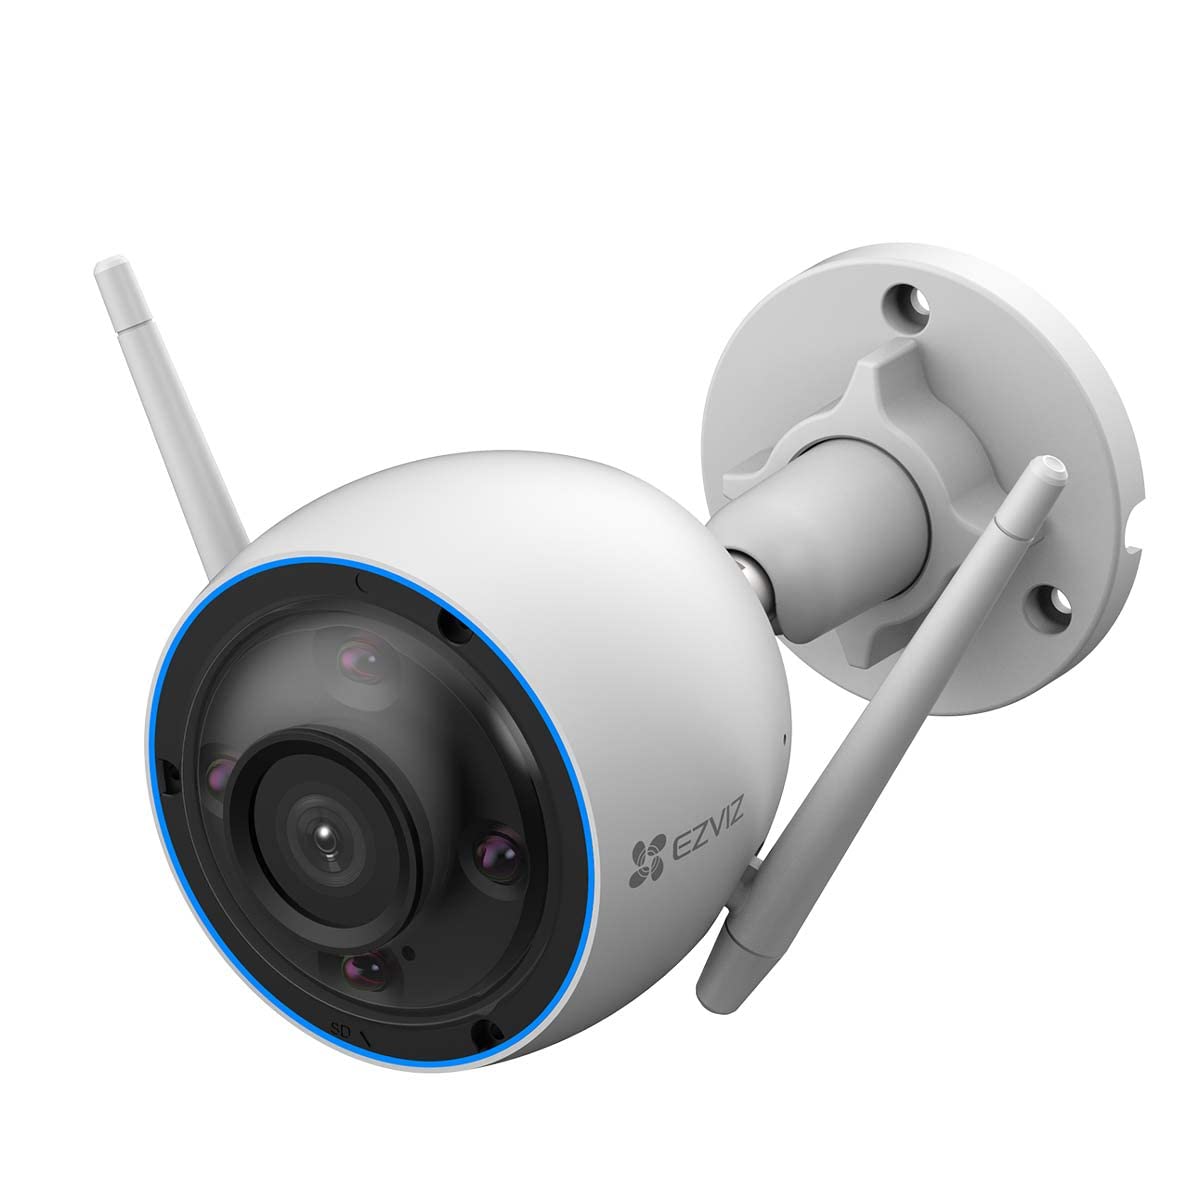 EZVIZ H6c Intelligente Schwenk/Neige WLAN Überwachungskamera mit 360°- Panoramablick, Zwei-Wege-Audio, Bewegungserkennung mit Automatische Verfolgung, Nachtsicht (bis zu 10 m)